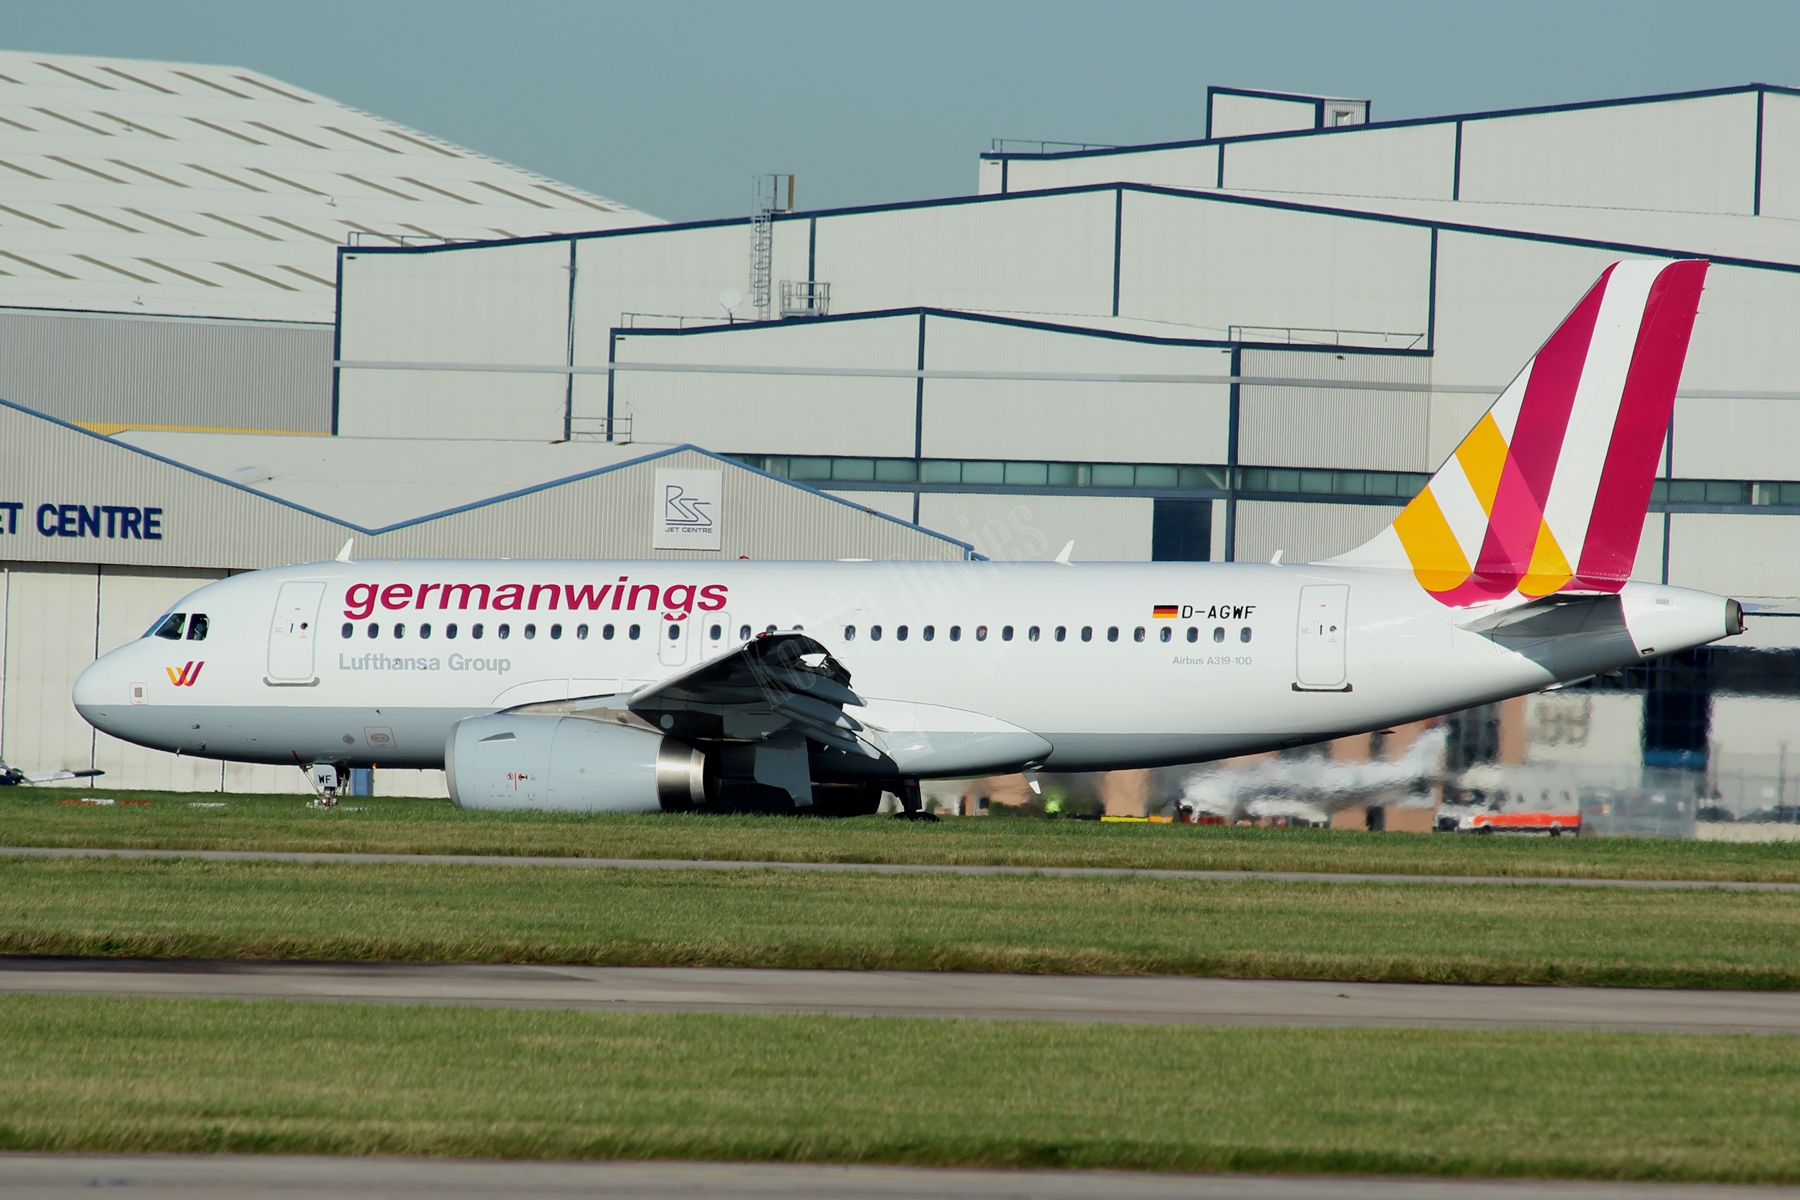 Germanwings A319 D-AGWF